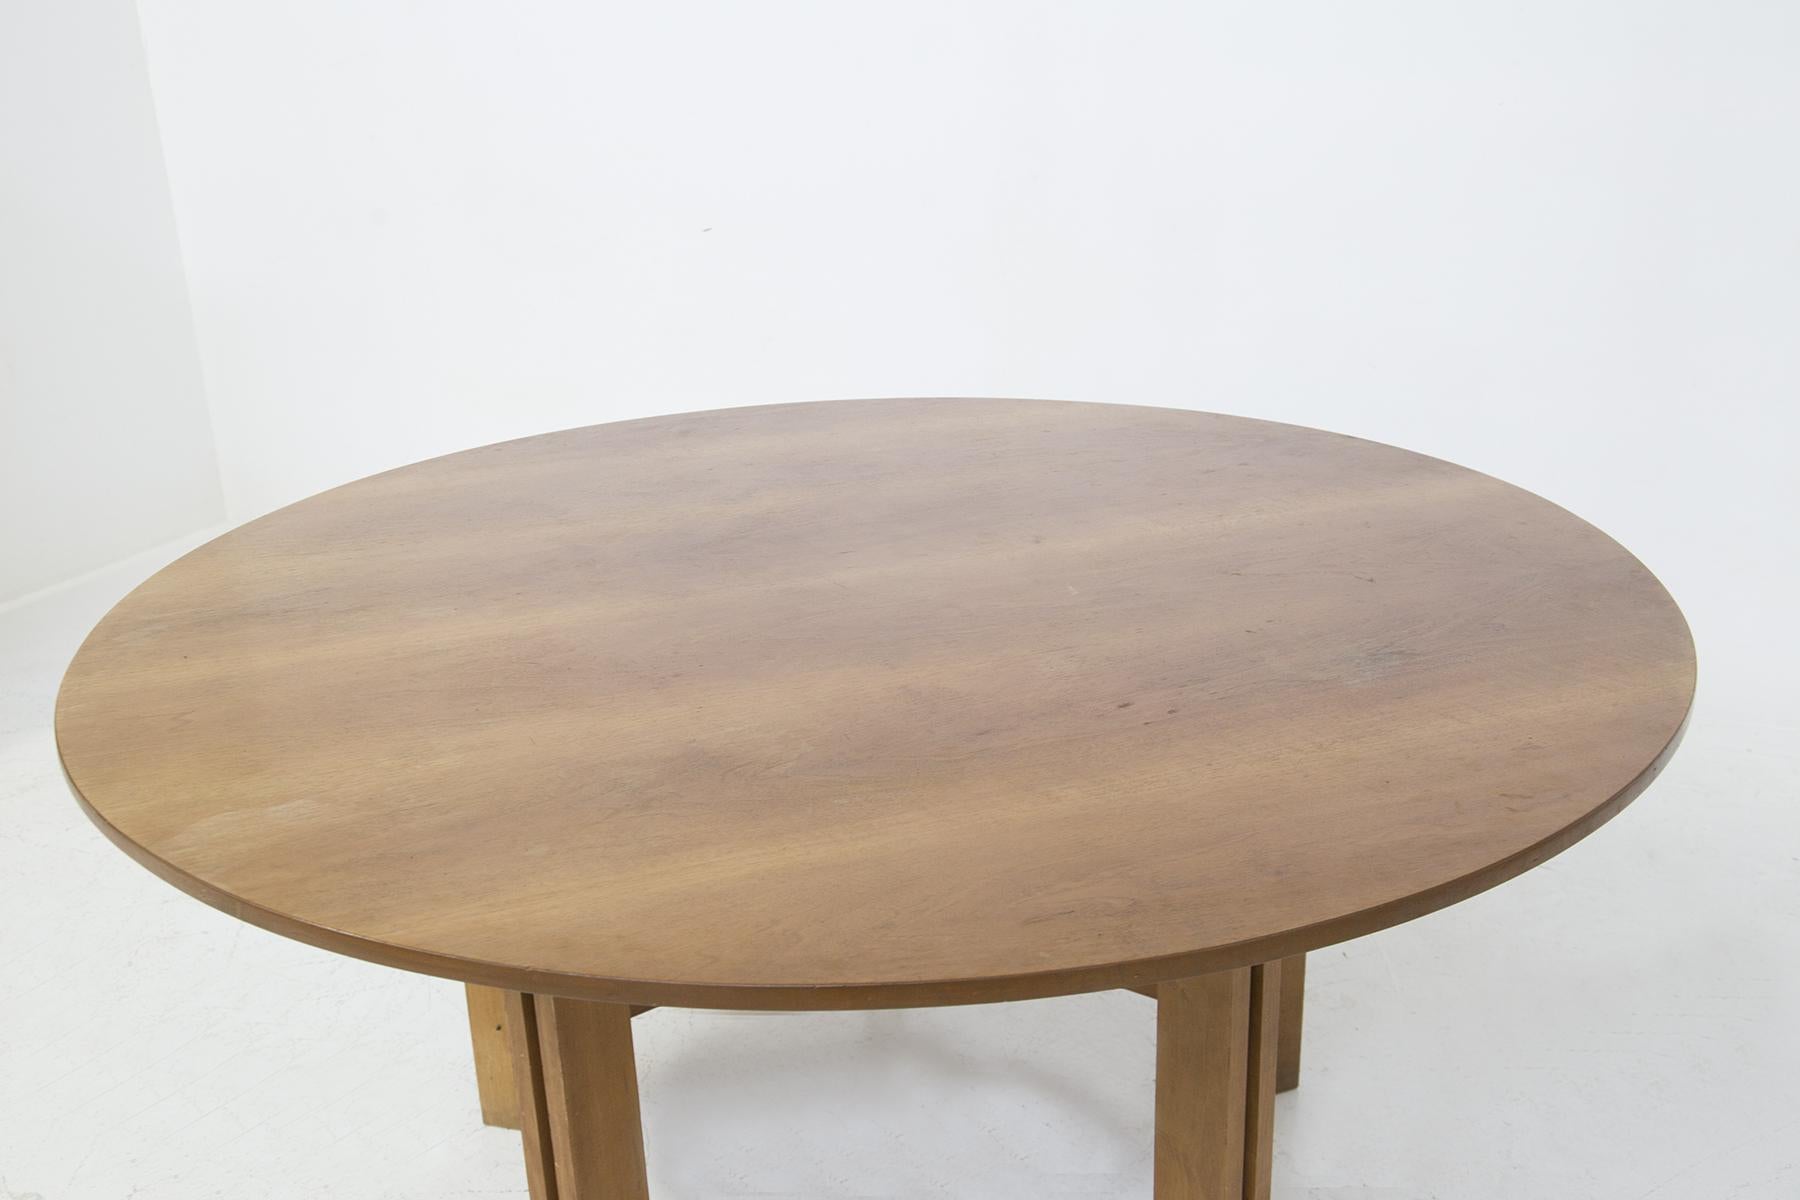 Schöner runder Tisch, entworfen von den drei großen Designern Vittorio Gregotti, Lodovico Meneghetti und Giotto Stoppino, aus feiner italienischer Fertigung aus den 1950er Jahren. EINZIGARTIGES STÜCK.
Der Tisch ist ganz aus Holz mit harten,